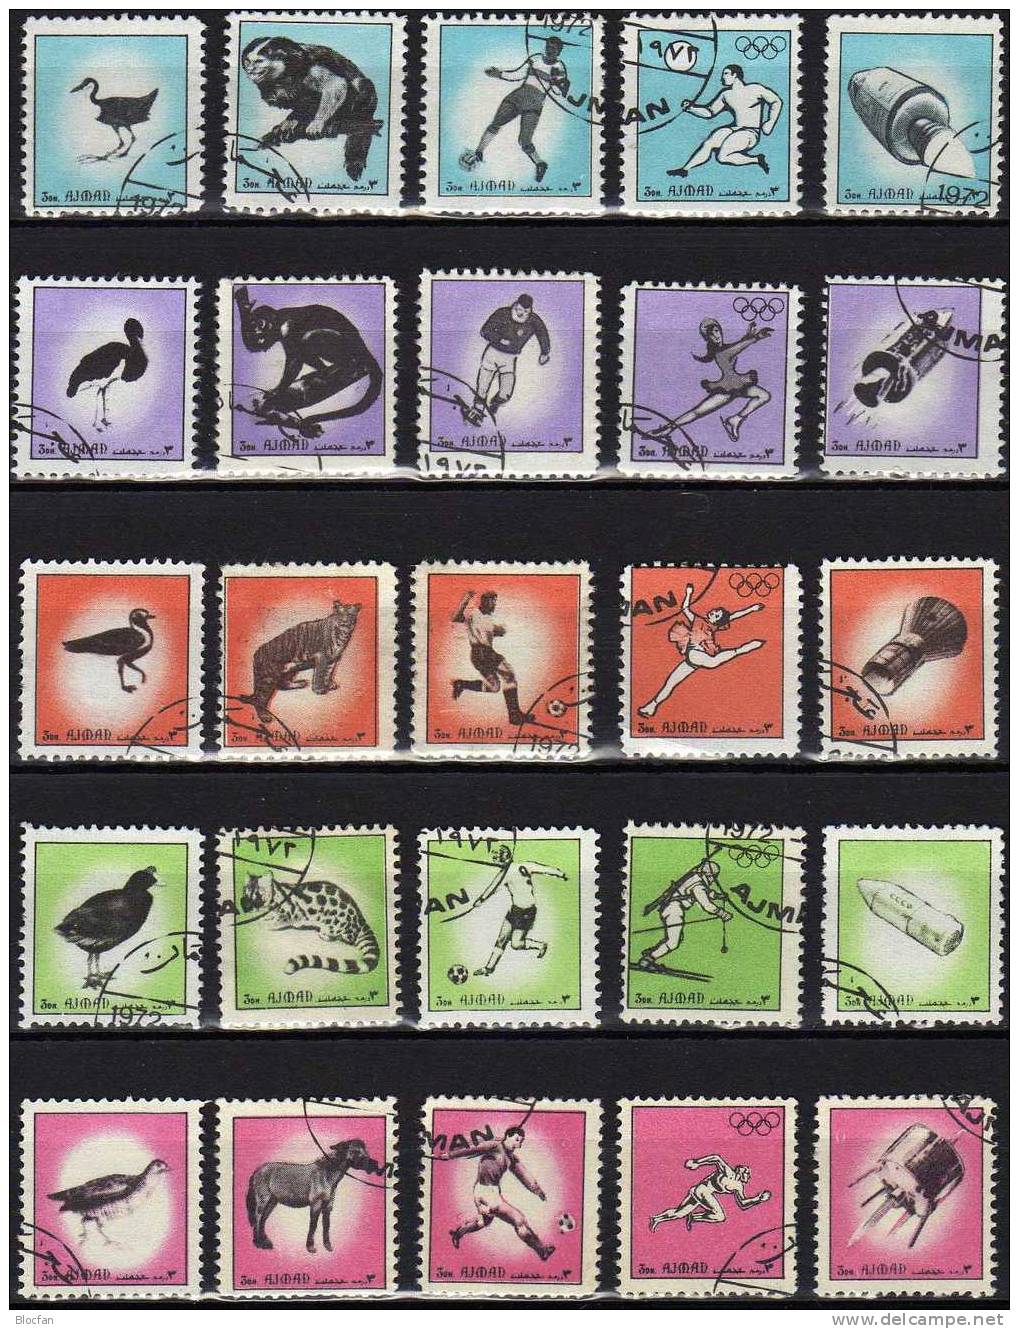 Förderung Der Motiv - Briefmarken VAE Ajman 2493/17 Aus KB O 4€ Motive Fußball, Olympia, Raumfahrt, Vögel, Tiere - Sommer 1972: München